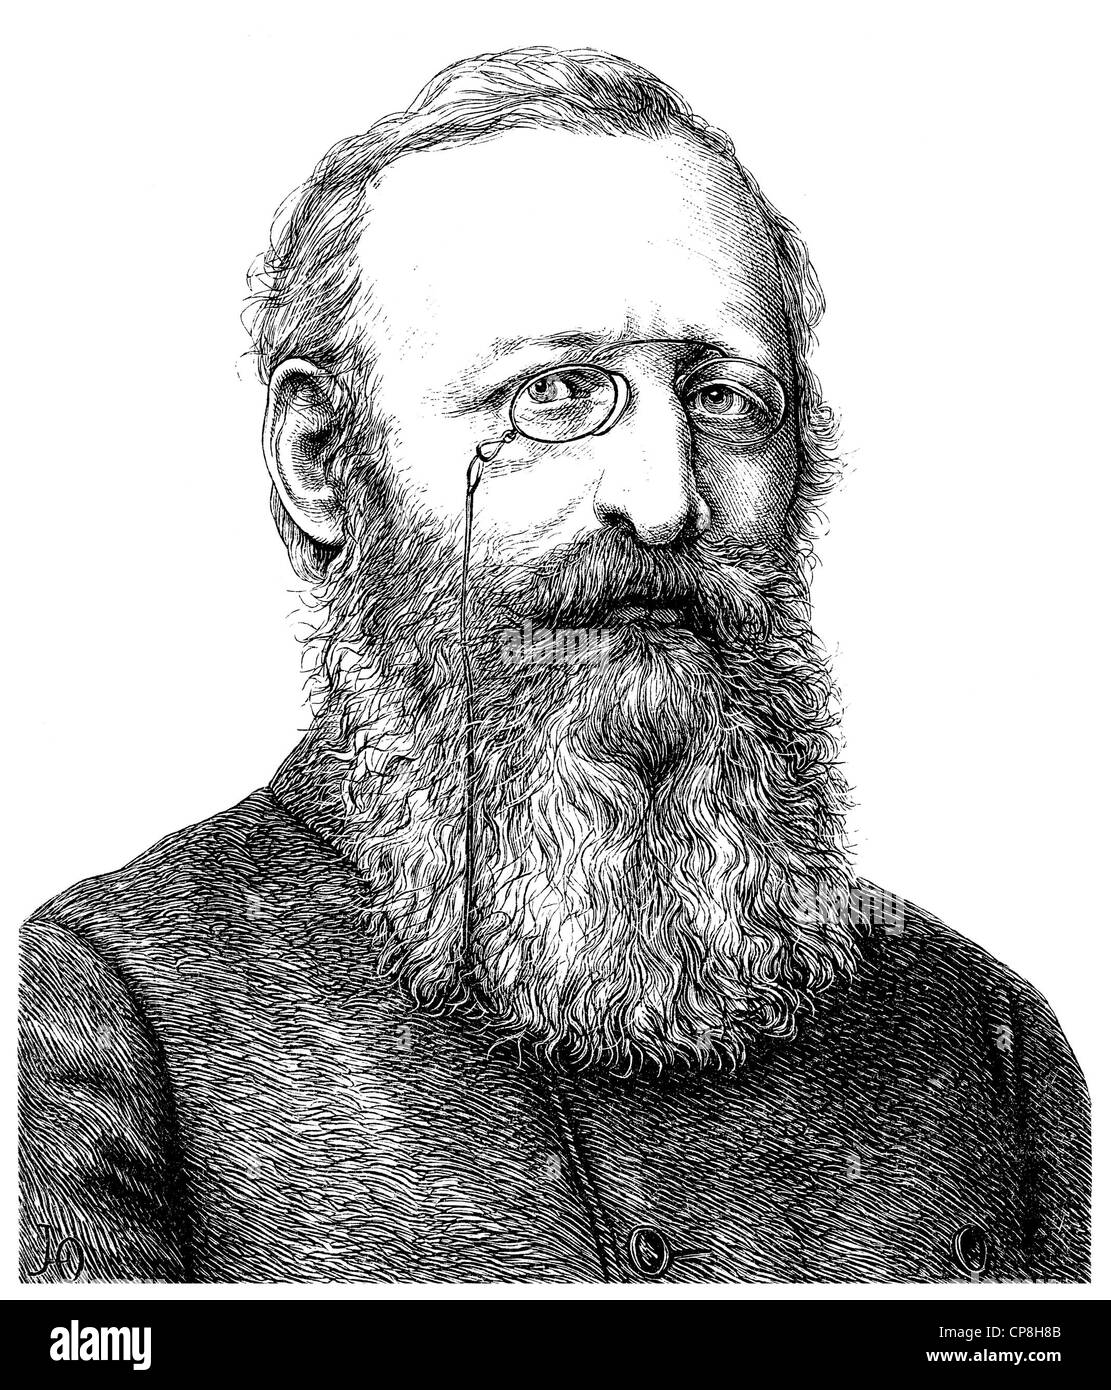 Louis Anzengruber, 1839 - 1889, an Austrian writer, Historische Zeichnung aus dem 19. Jahrhundert, Portrait von Ludwig Anzengrub Stock Photo